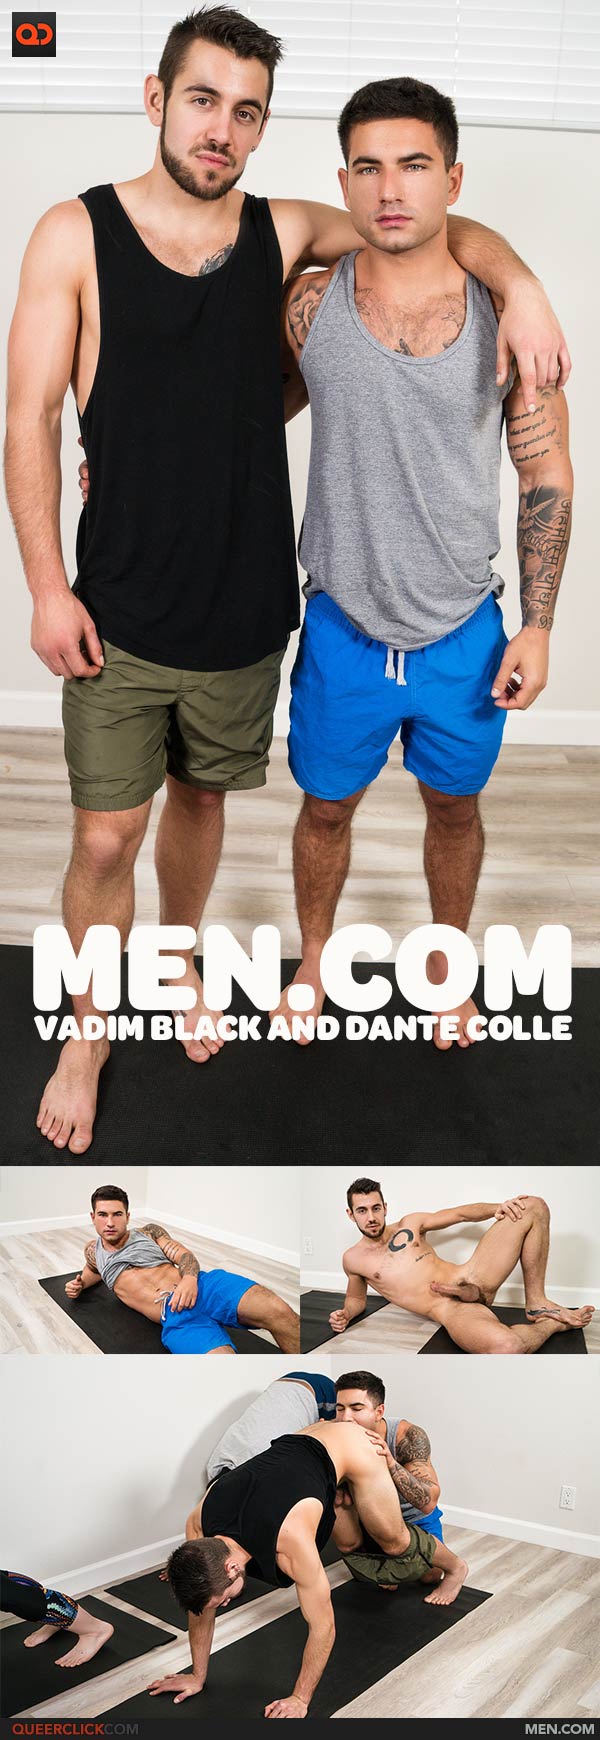 Men.com: Vadim Black and Dante Colle